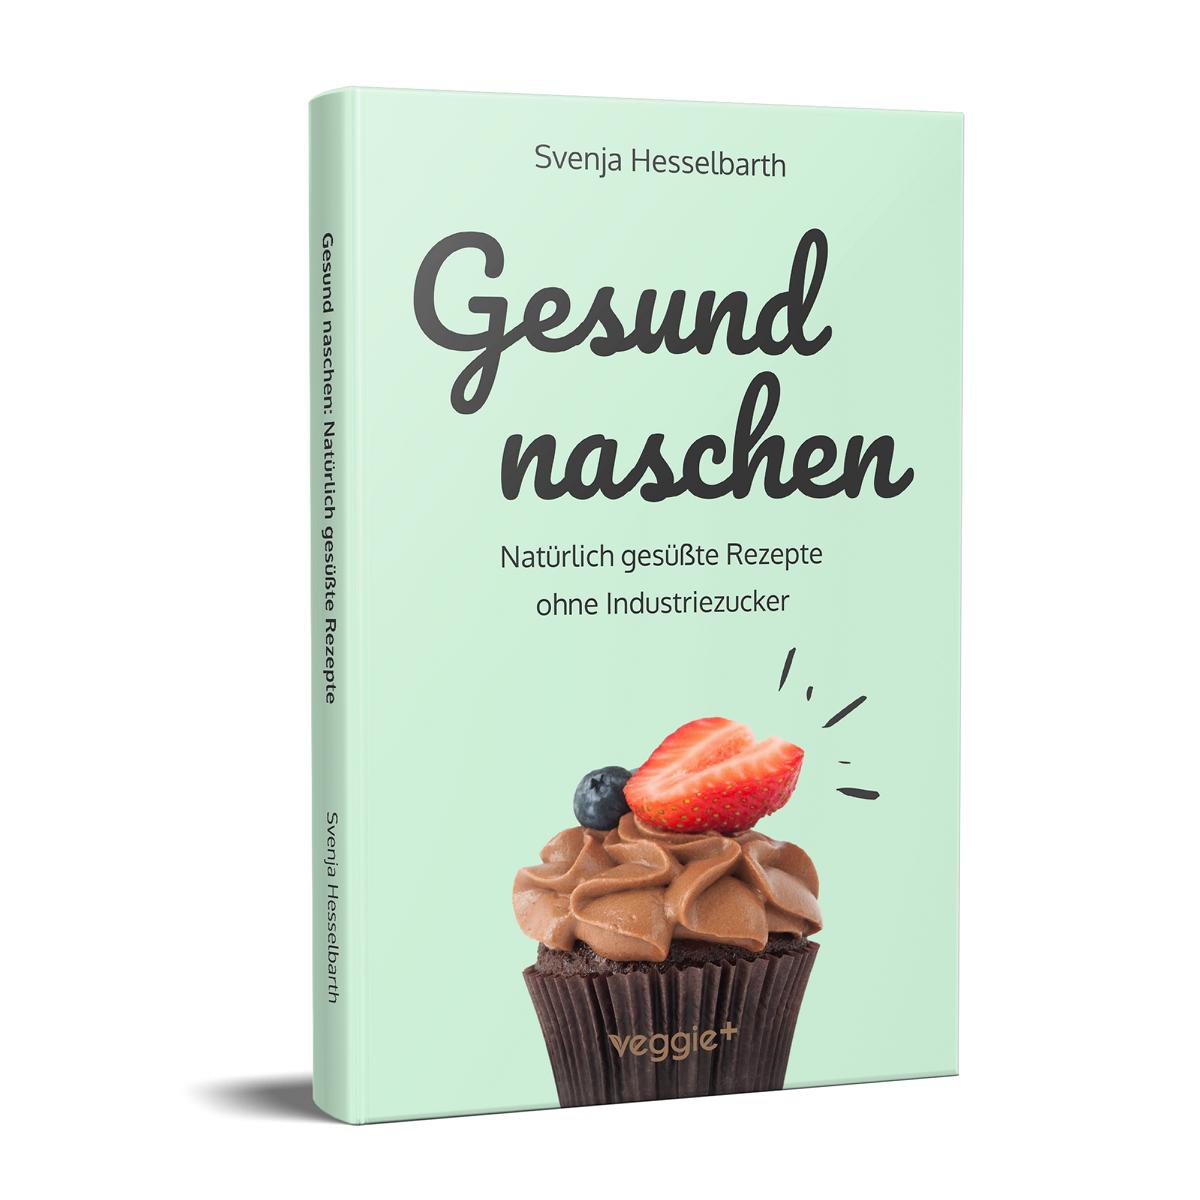 Gesund naschen: Natürliche Rezepte ohne Industriezucker für gesunde Naschereien von Svenja Hesselbarth im veggie + Verlag